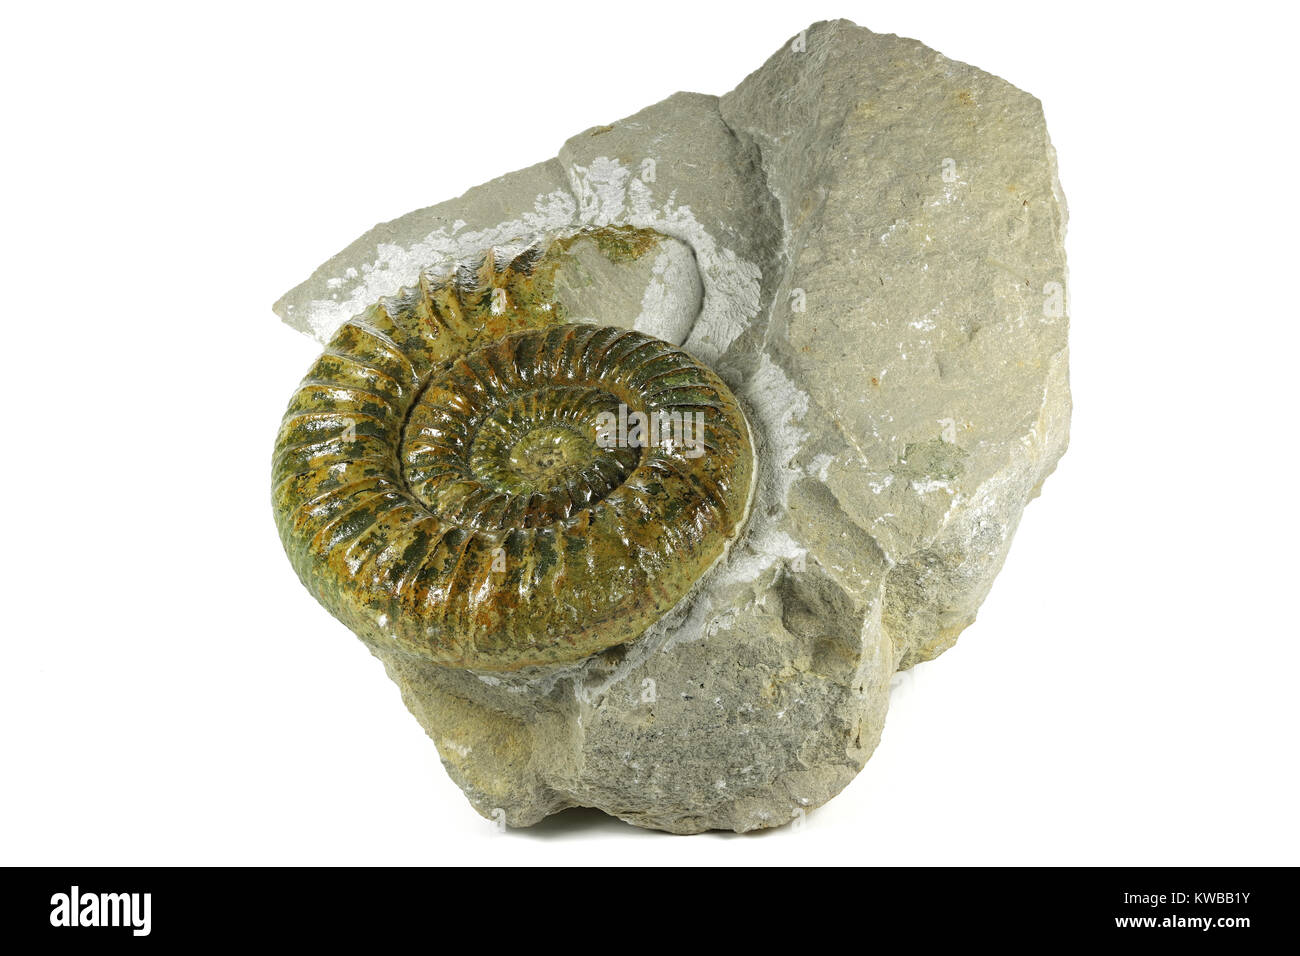 Fossile genuinum Ataxioceras ammonita dal Palatinato Superiore, Germania isolati su sfondo bianco Foto Stock